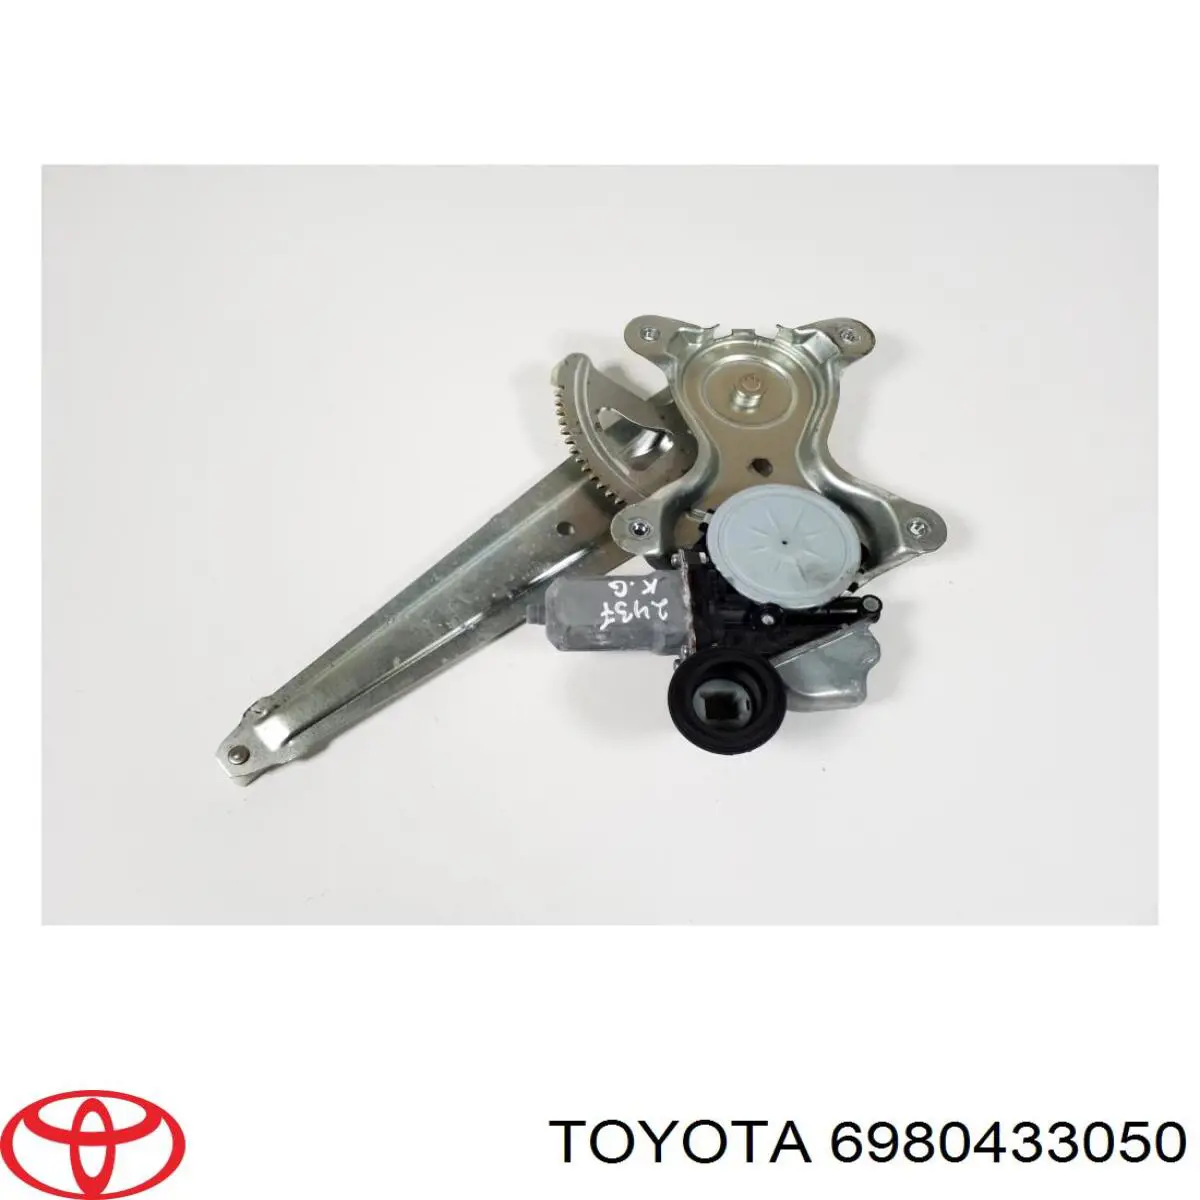 Mecanismo alzacristales, puerta trasera izquierda para Toyota Camry (V40)